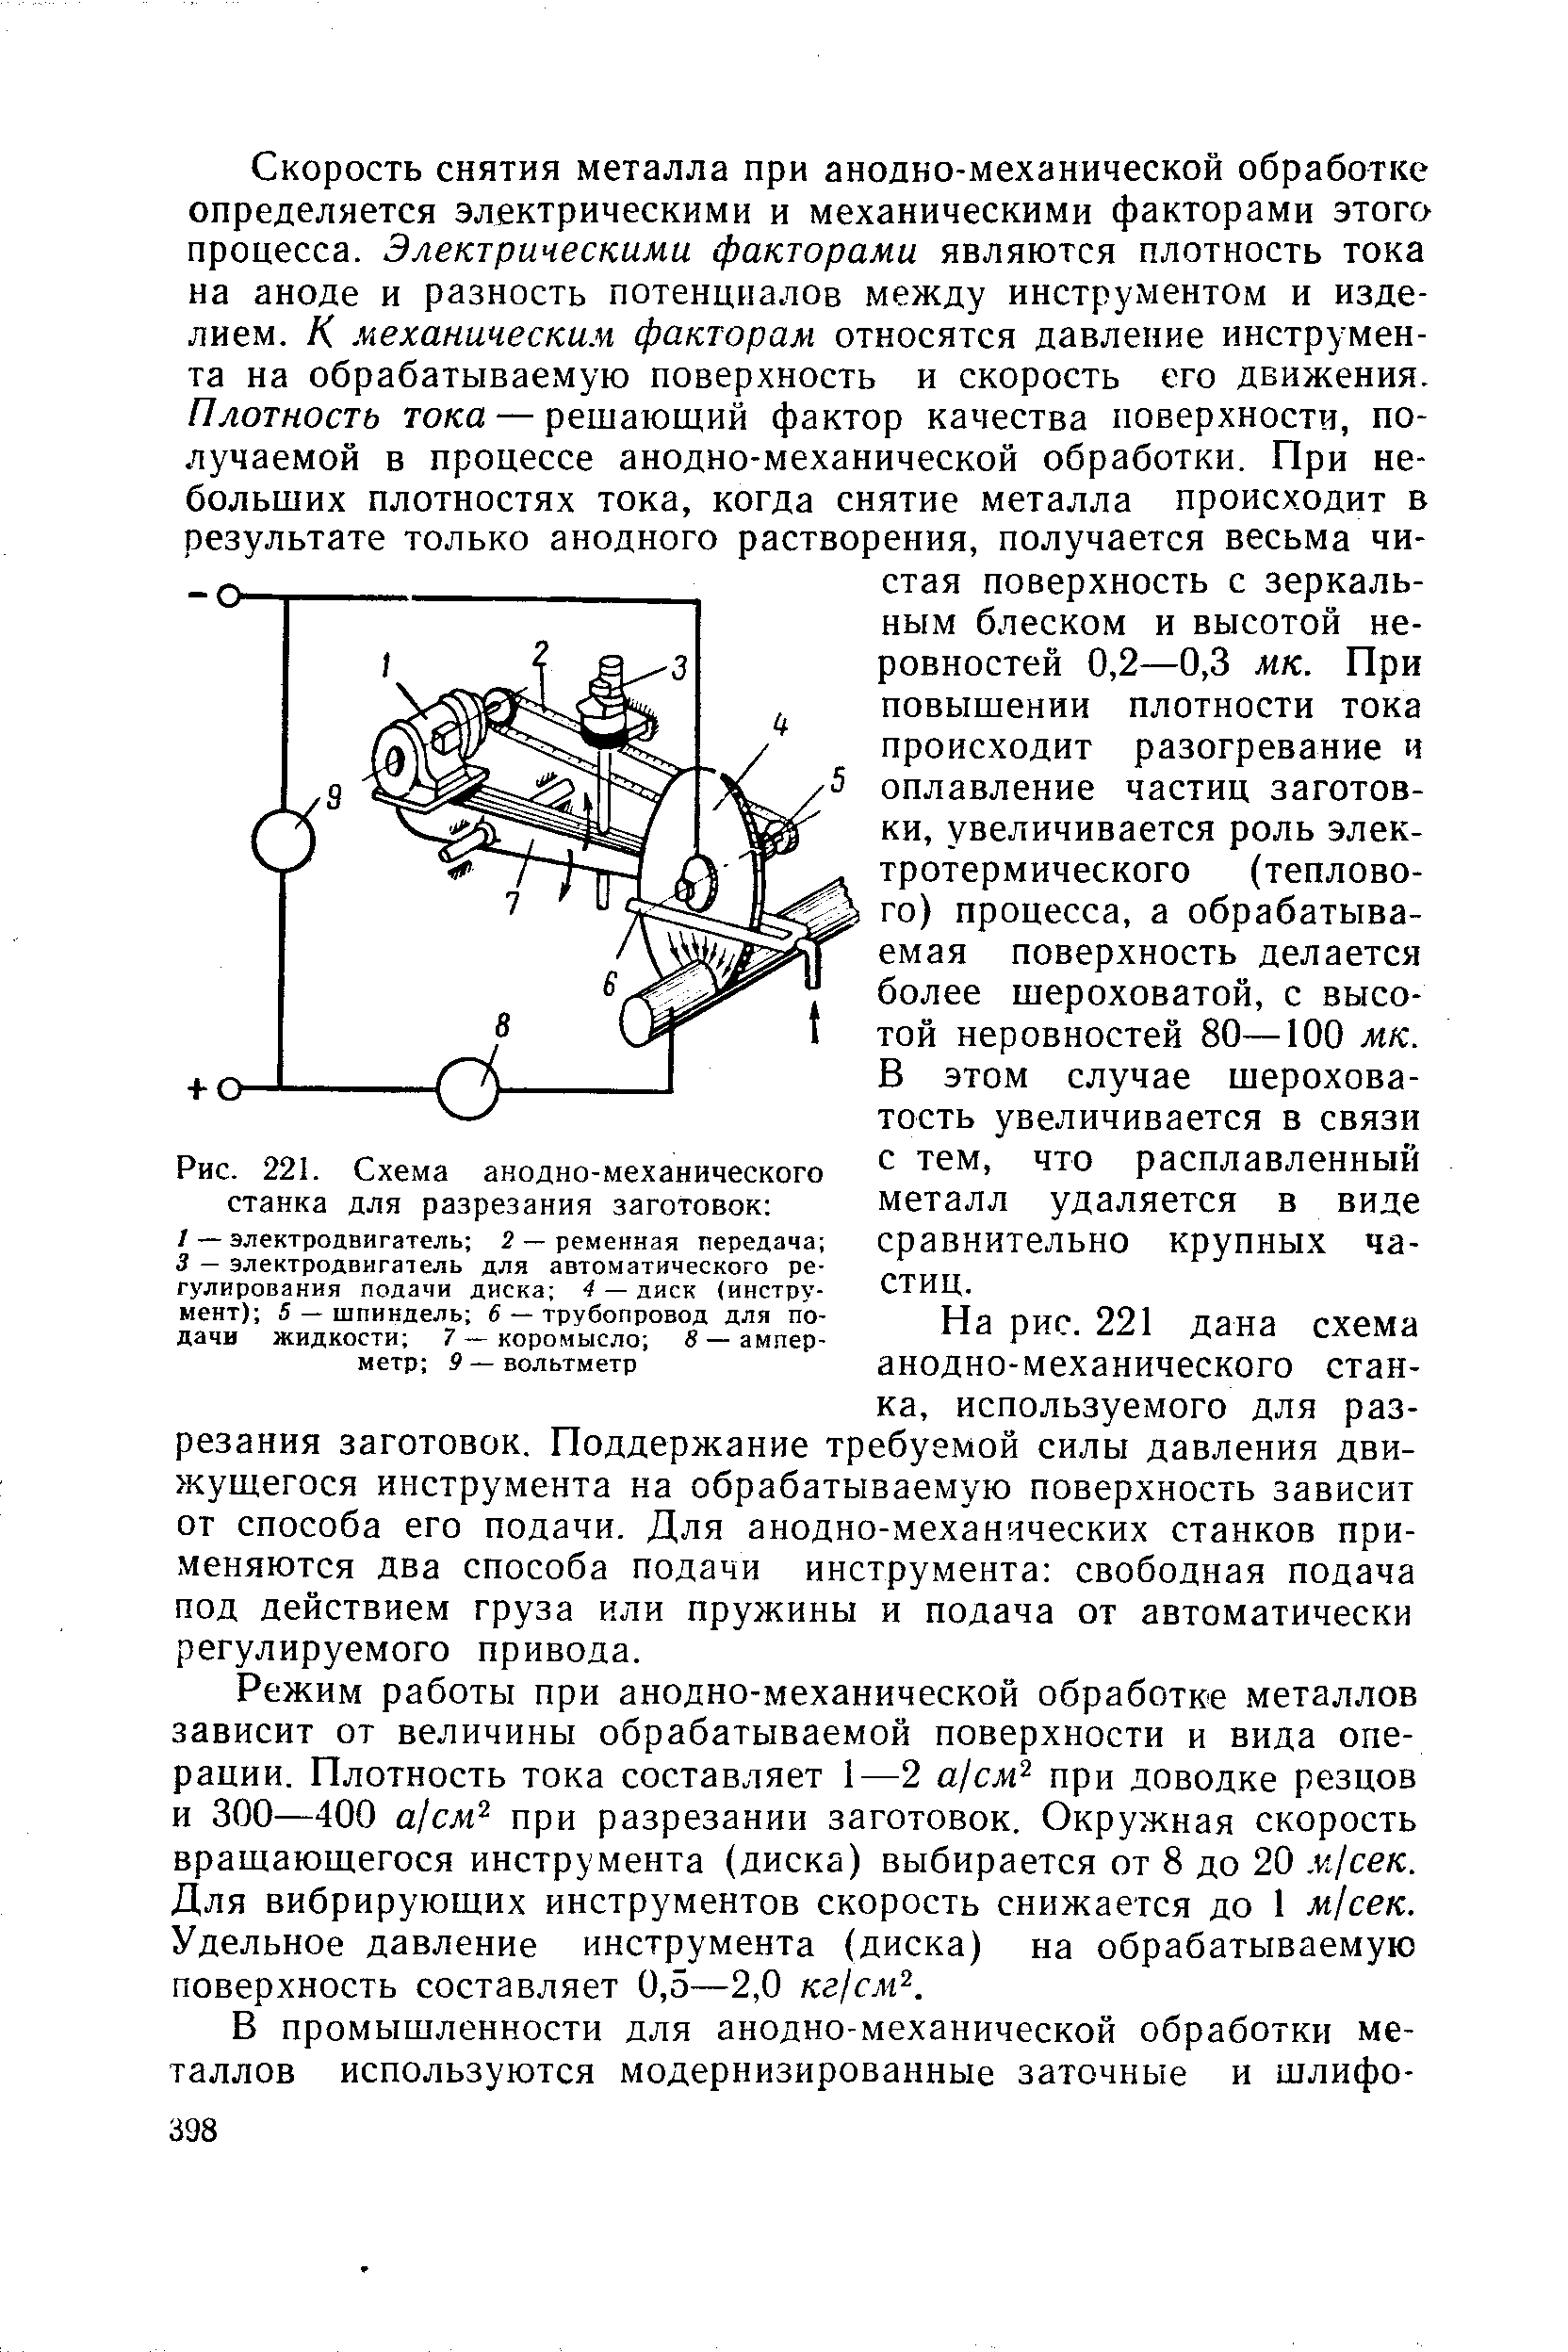 Рис. 221. Схема анодно-механического станка для разрезания заготовок 
